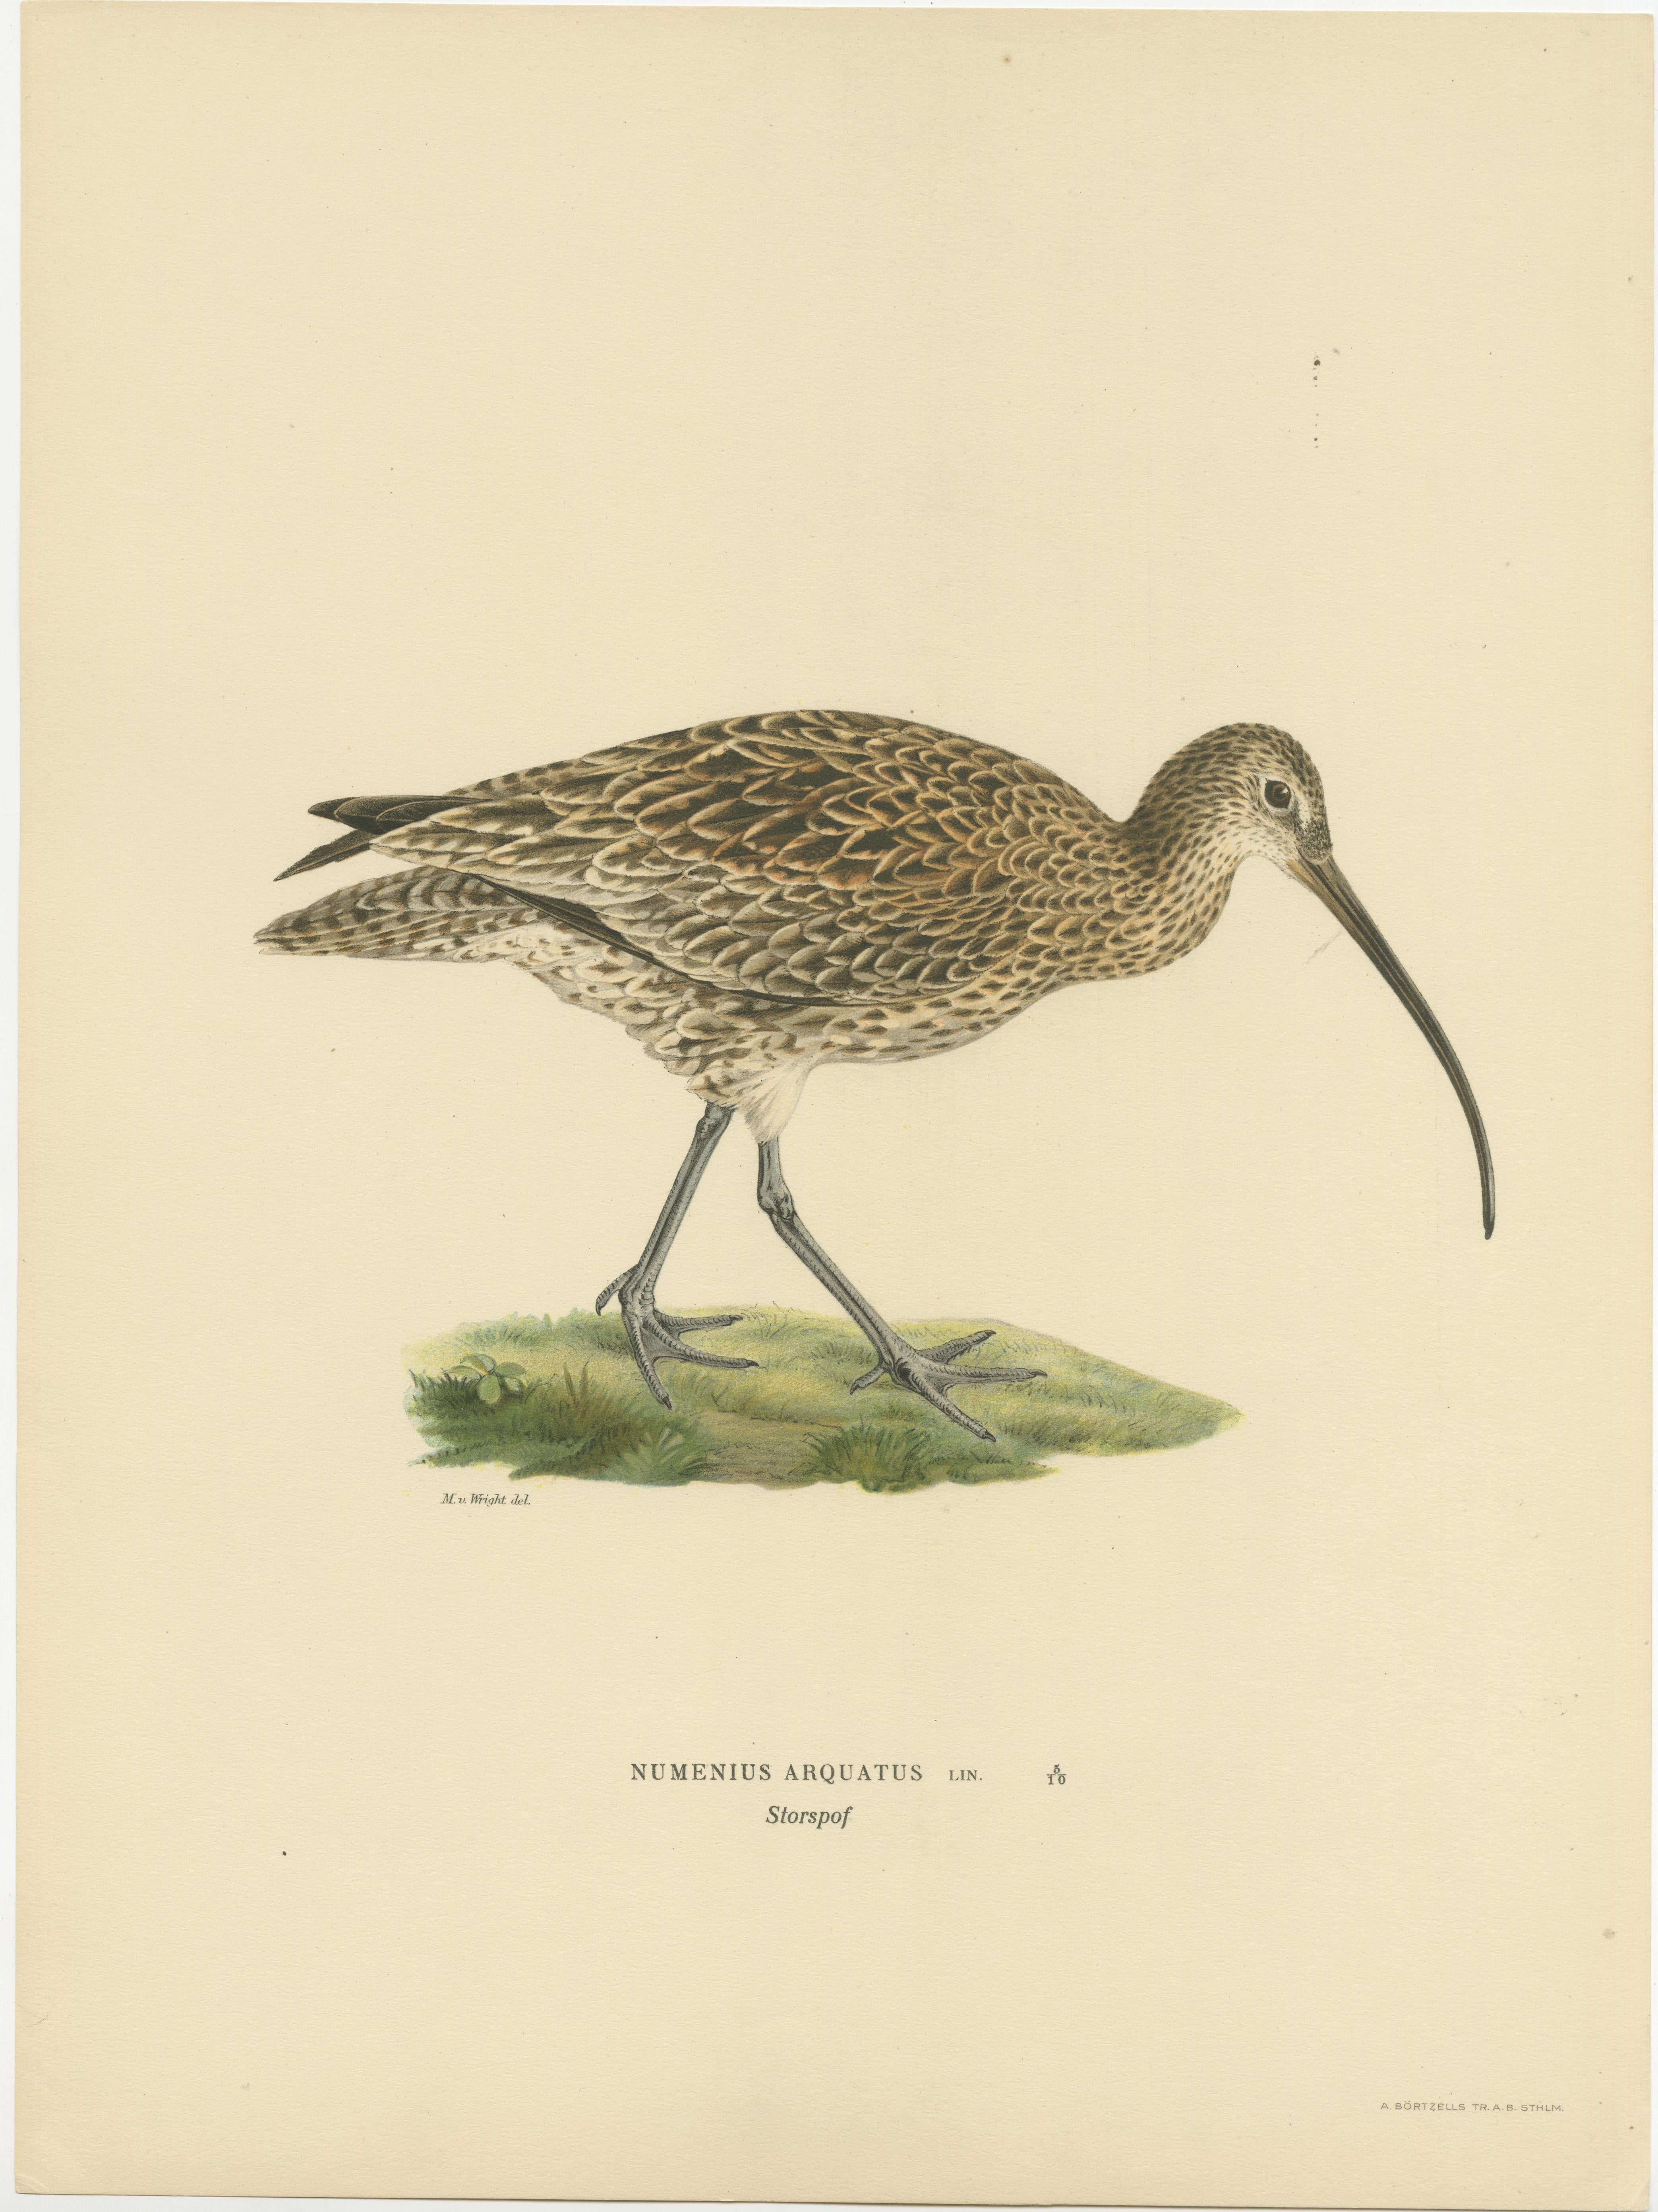 Das Bild zeigt eine Illustration des Regenbrachvogels (Numenius phaeopus), eines Vogels, der für seinen langen, gekrümmten Schnabel und sein braun gesprenkeltes Gefieder bekannt ist, das es ihm ermöglicht, sich in seiner sumpfigen und küstennahen